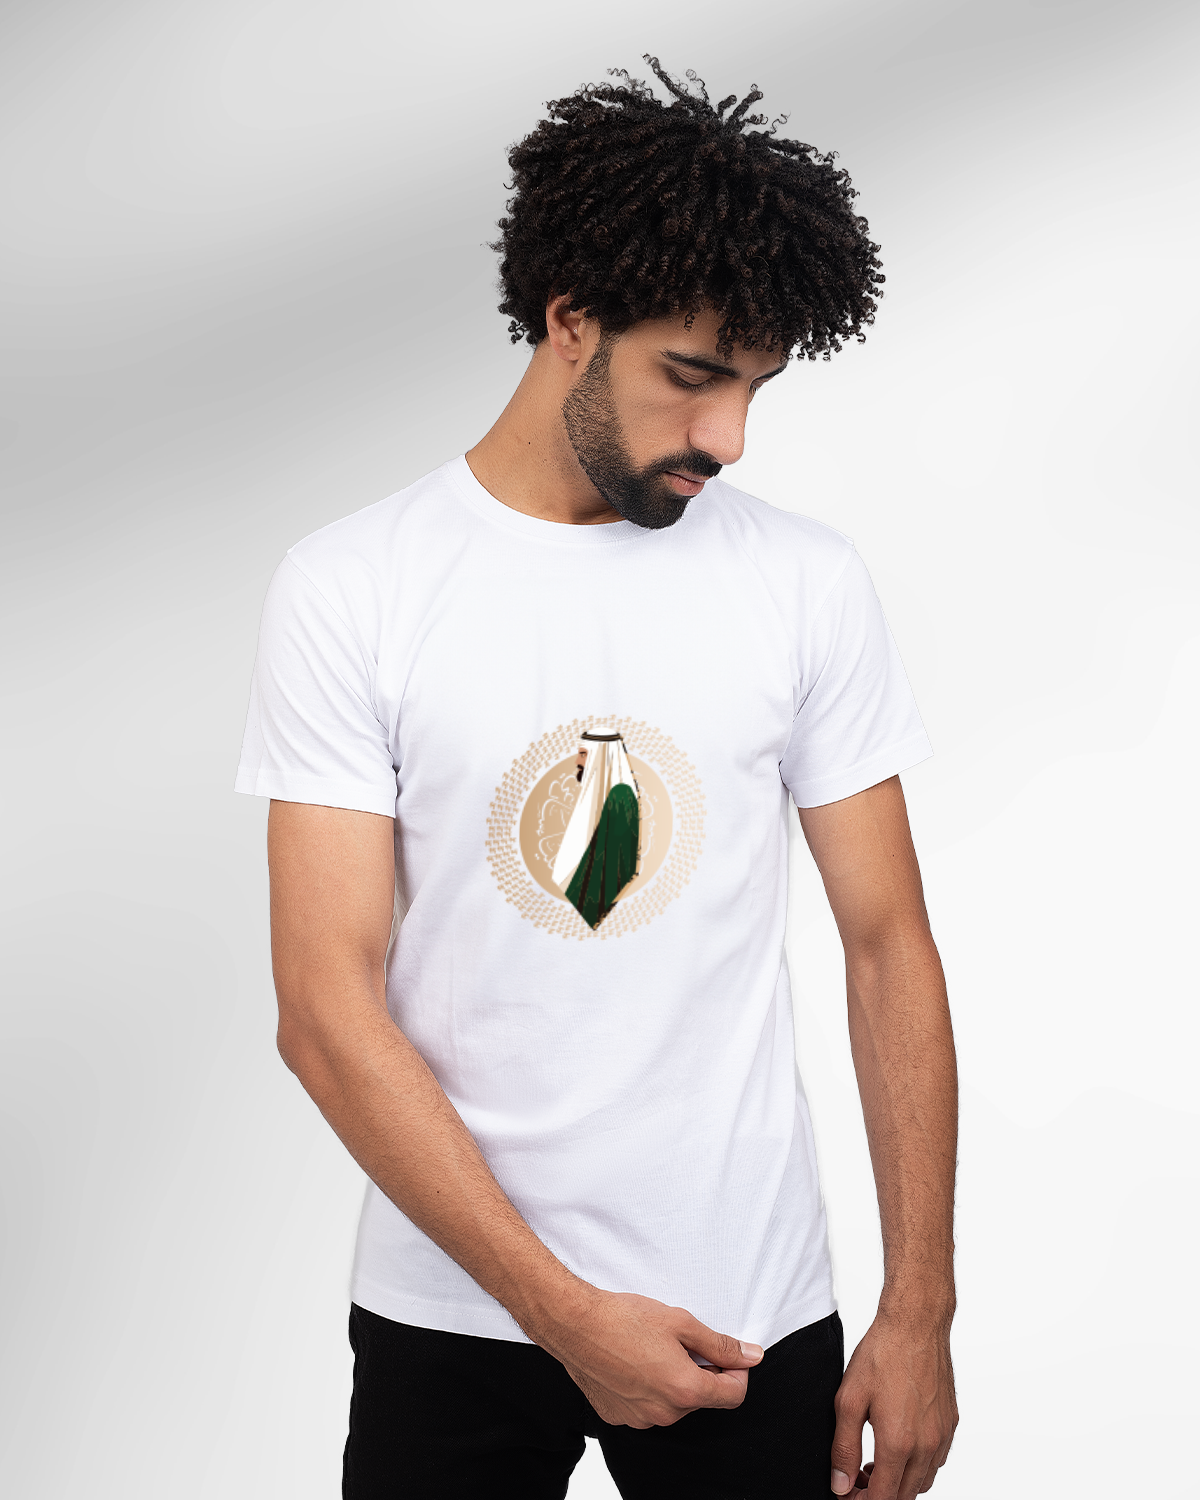 Men's Foundation Day T-shirt (Sarei Lilmajd Walealya')